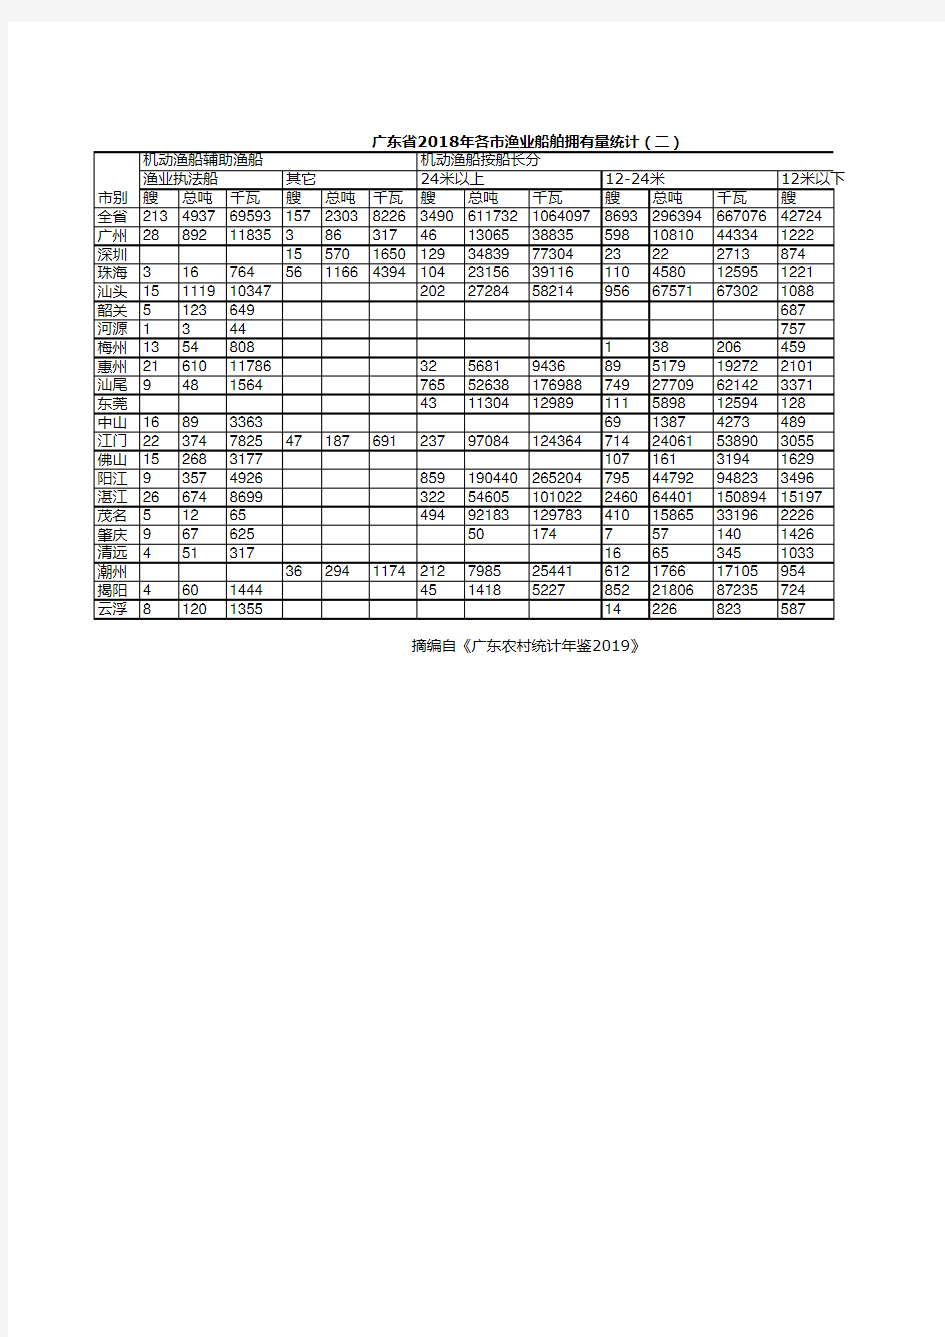 广东农村统计年鉴2019：2018年各市渔业船舶拥有量统计(二)